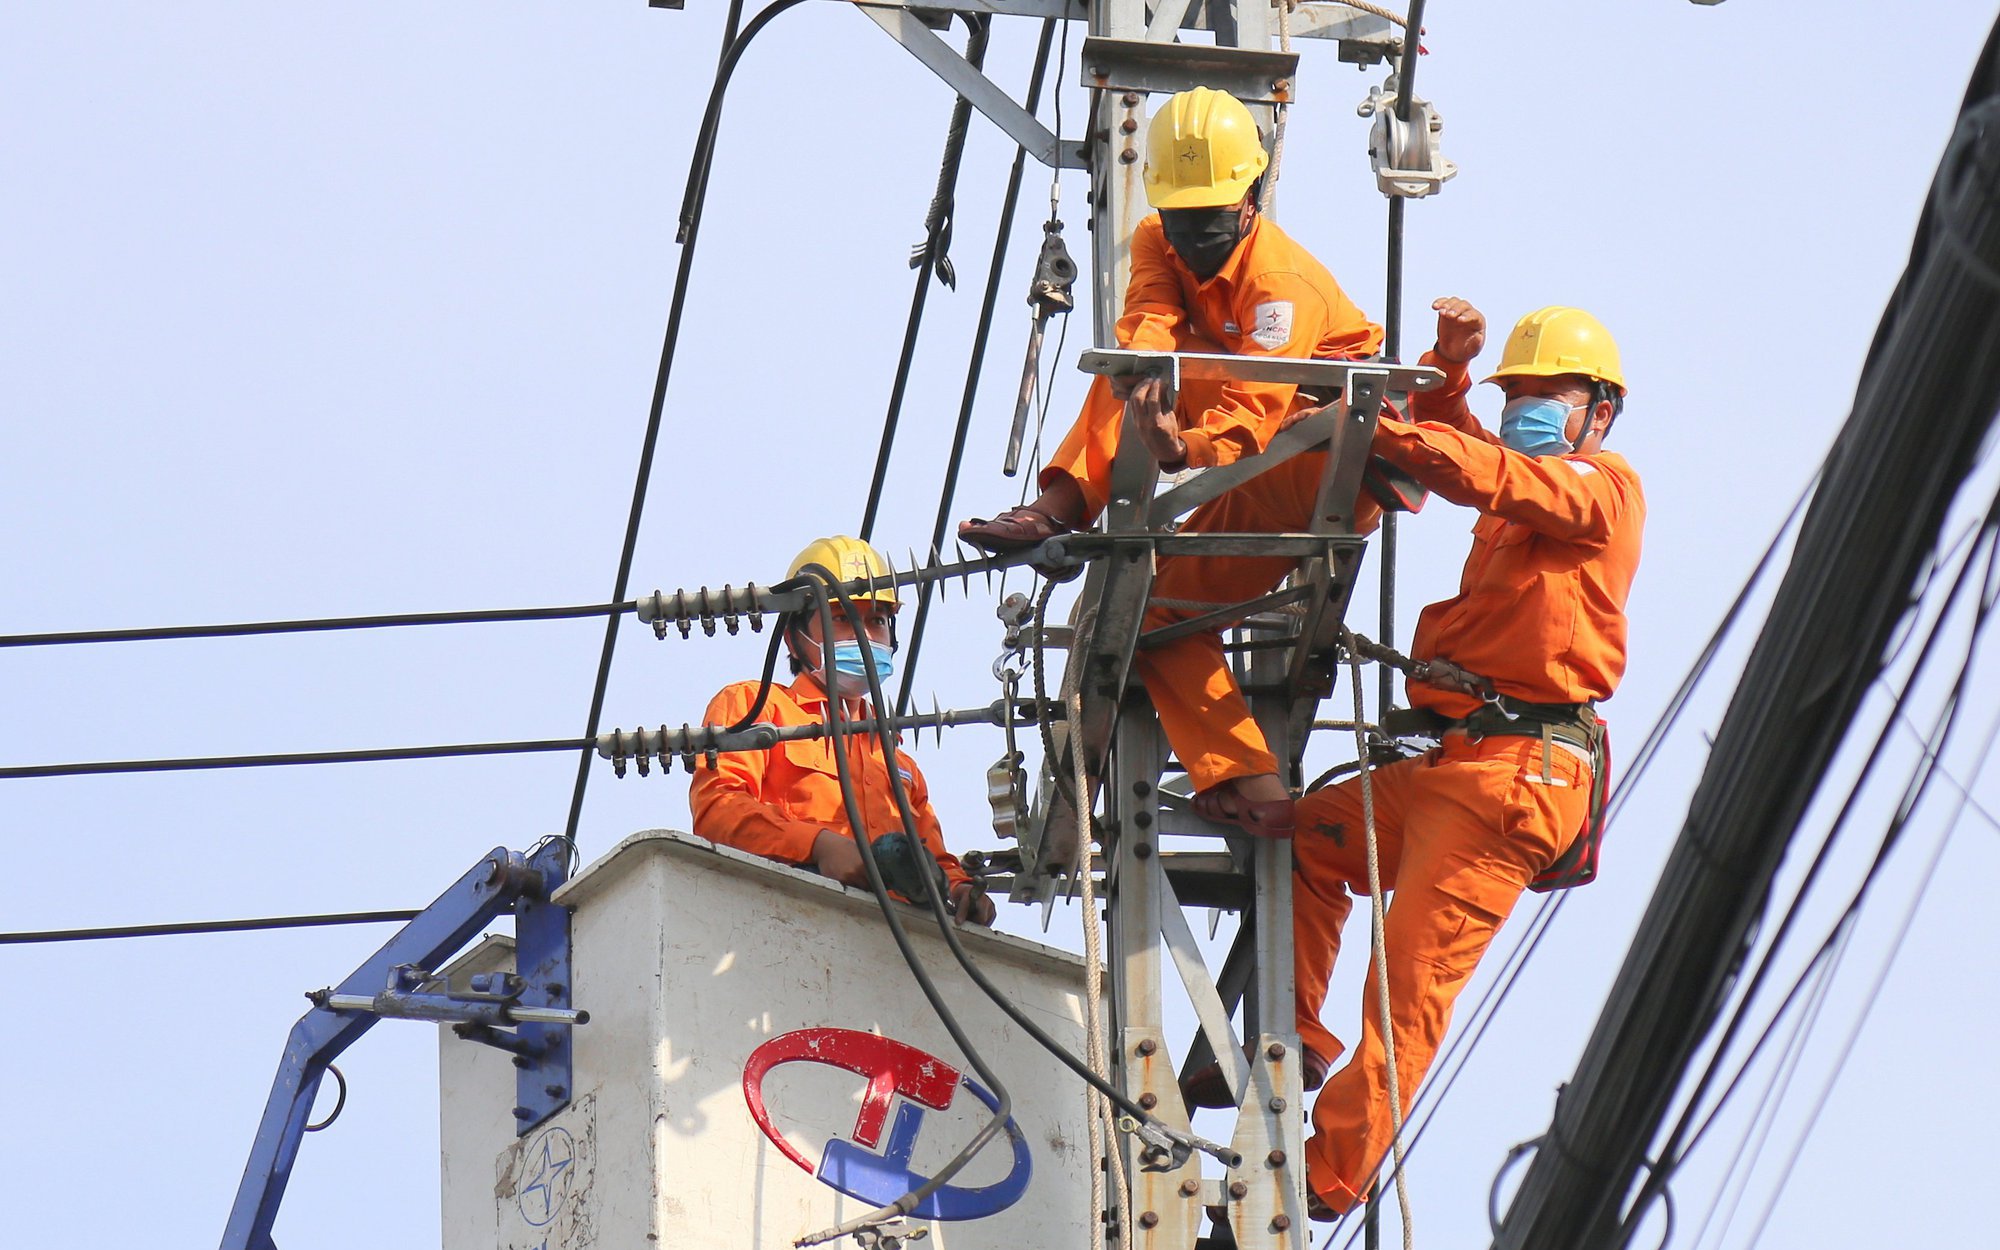 EVNCPC đoàn kết, vượt khó bảo đảm cung cấp điện cho miền Trung - Tây Nguyên